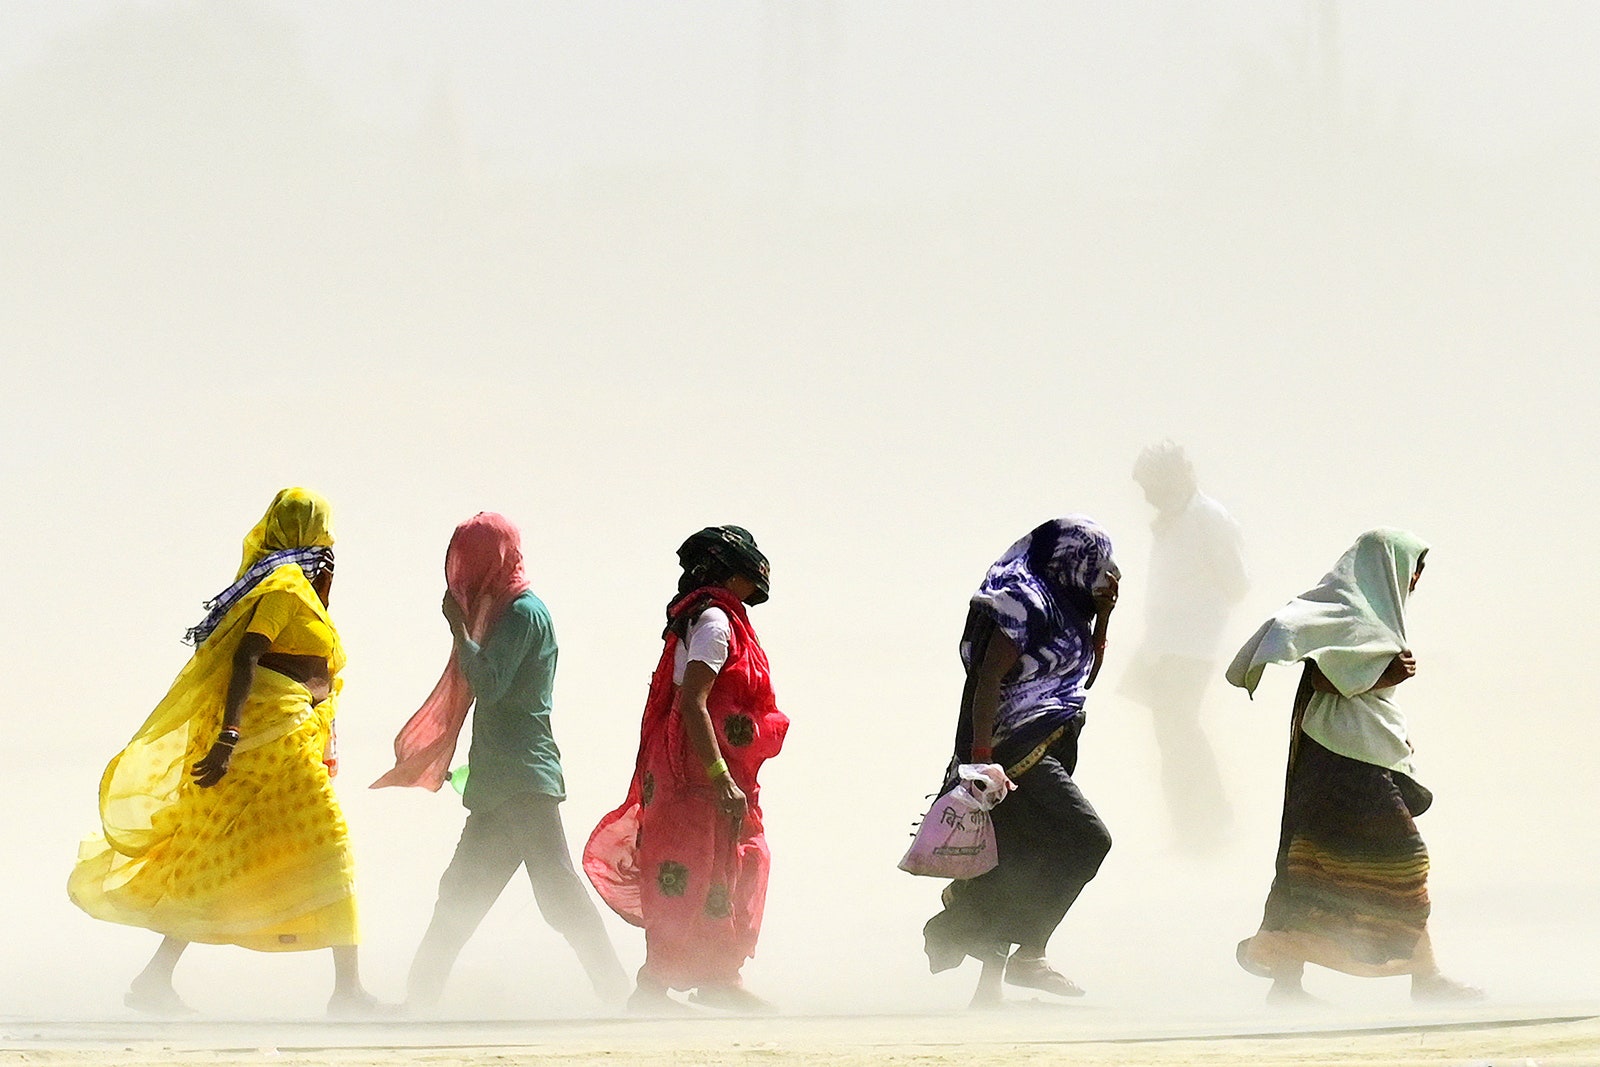 People walking in a line outside in a dusty hot landscape